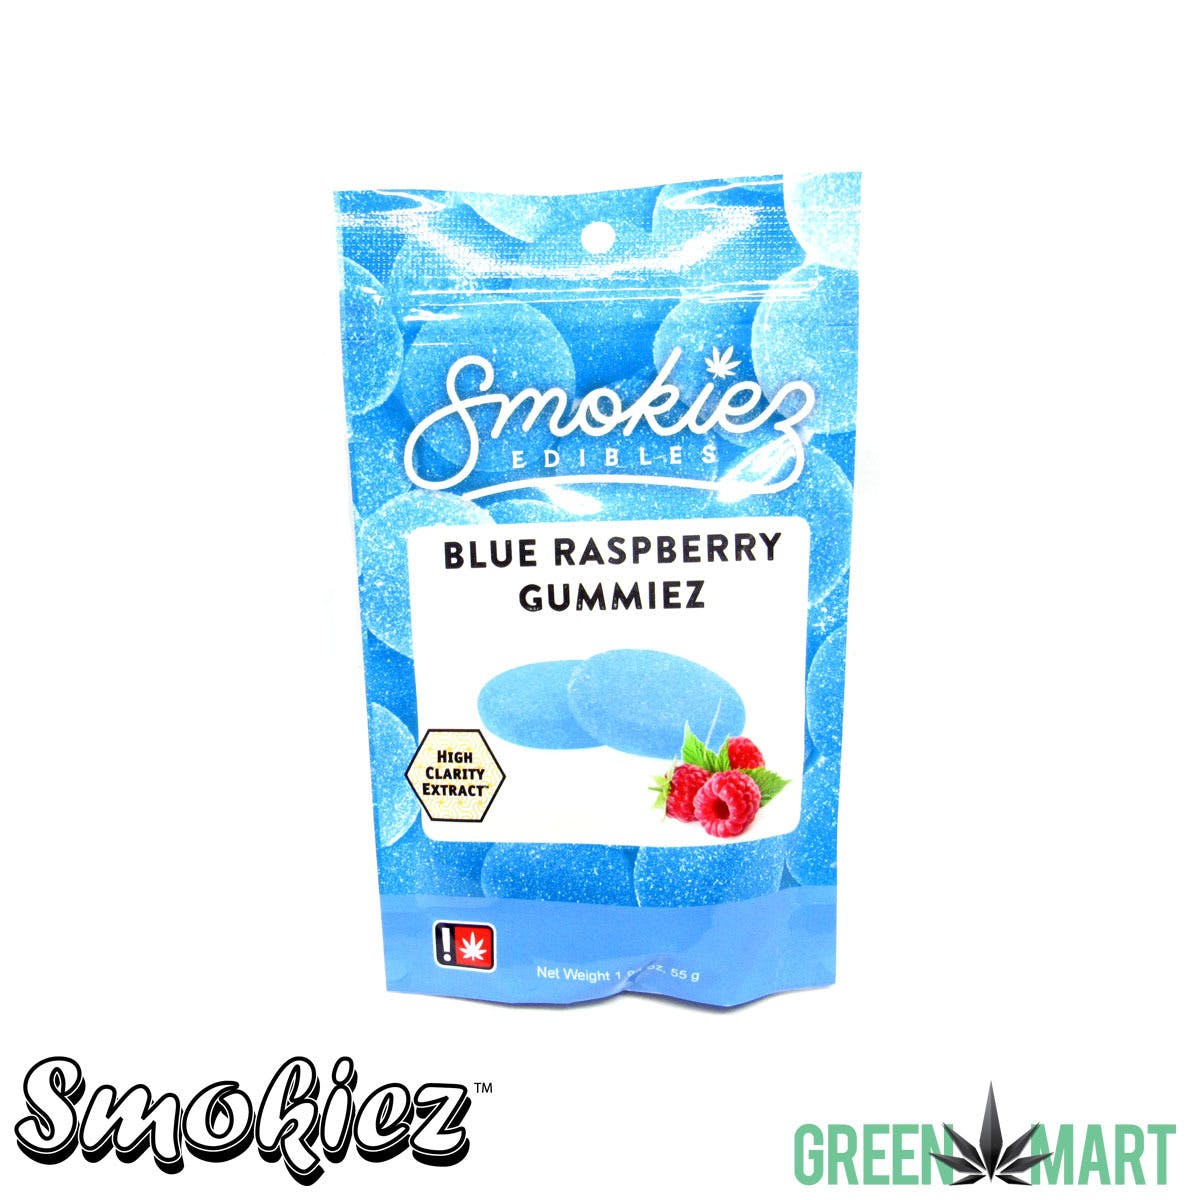 edible-smokiez-gummiez-blue-raspberry